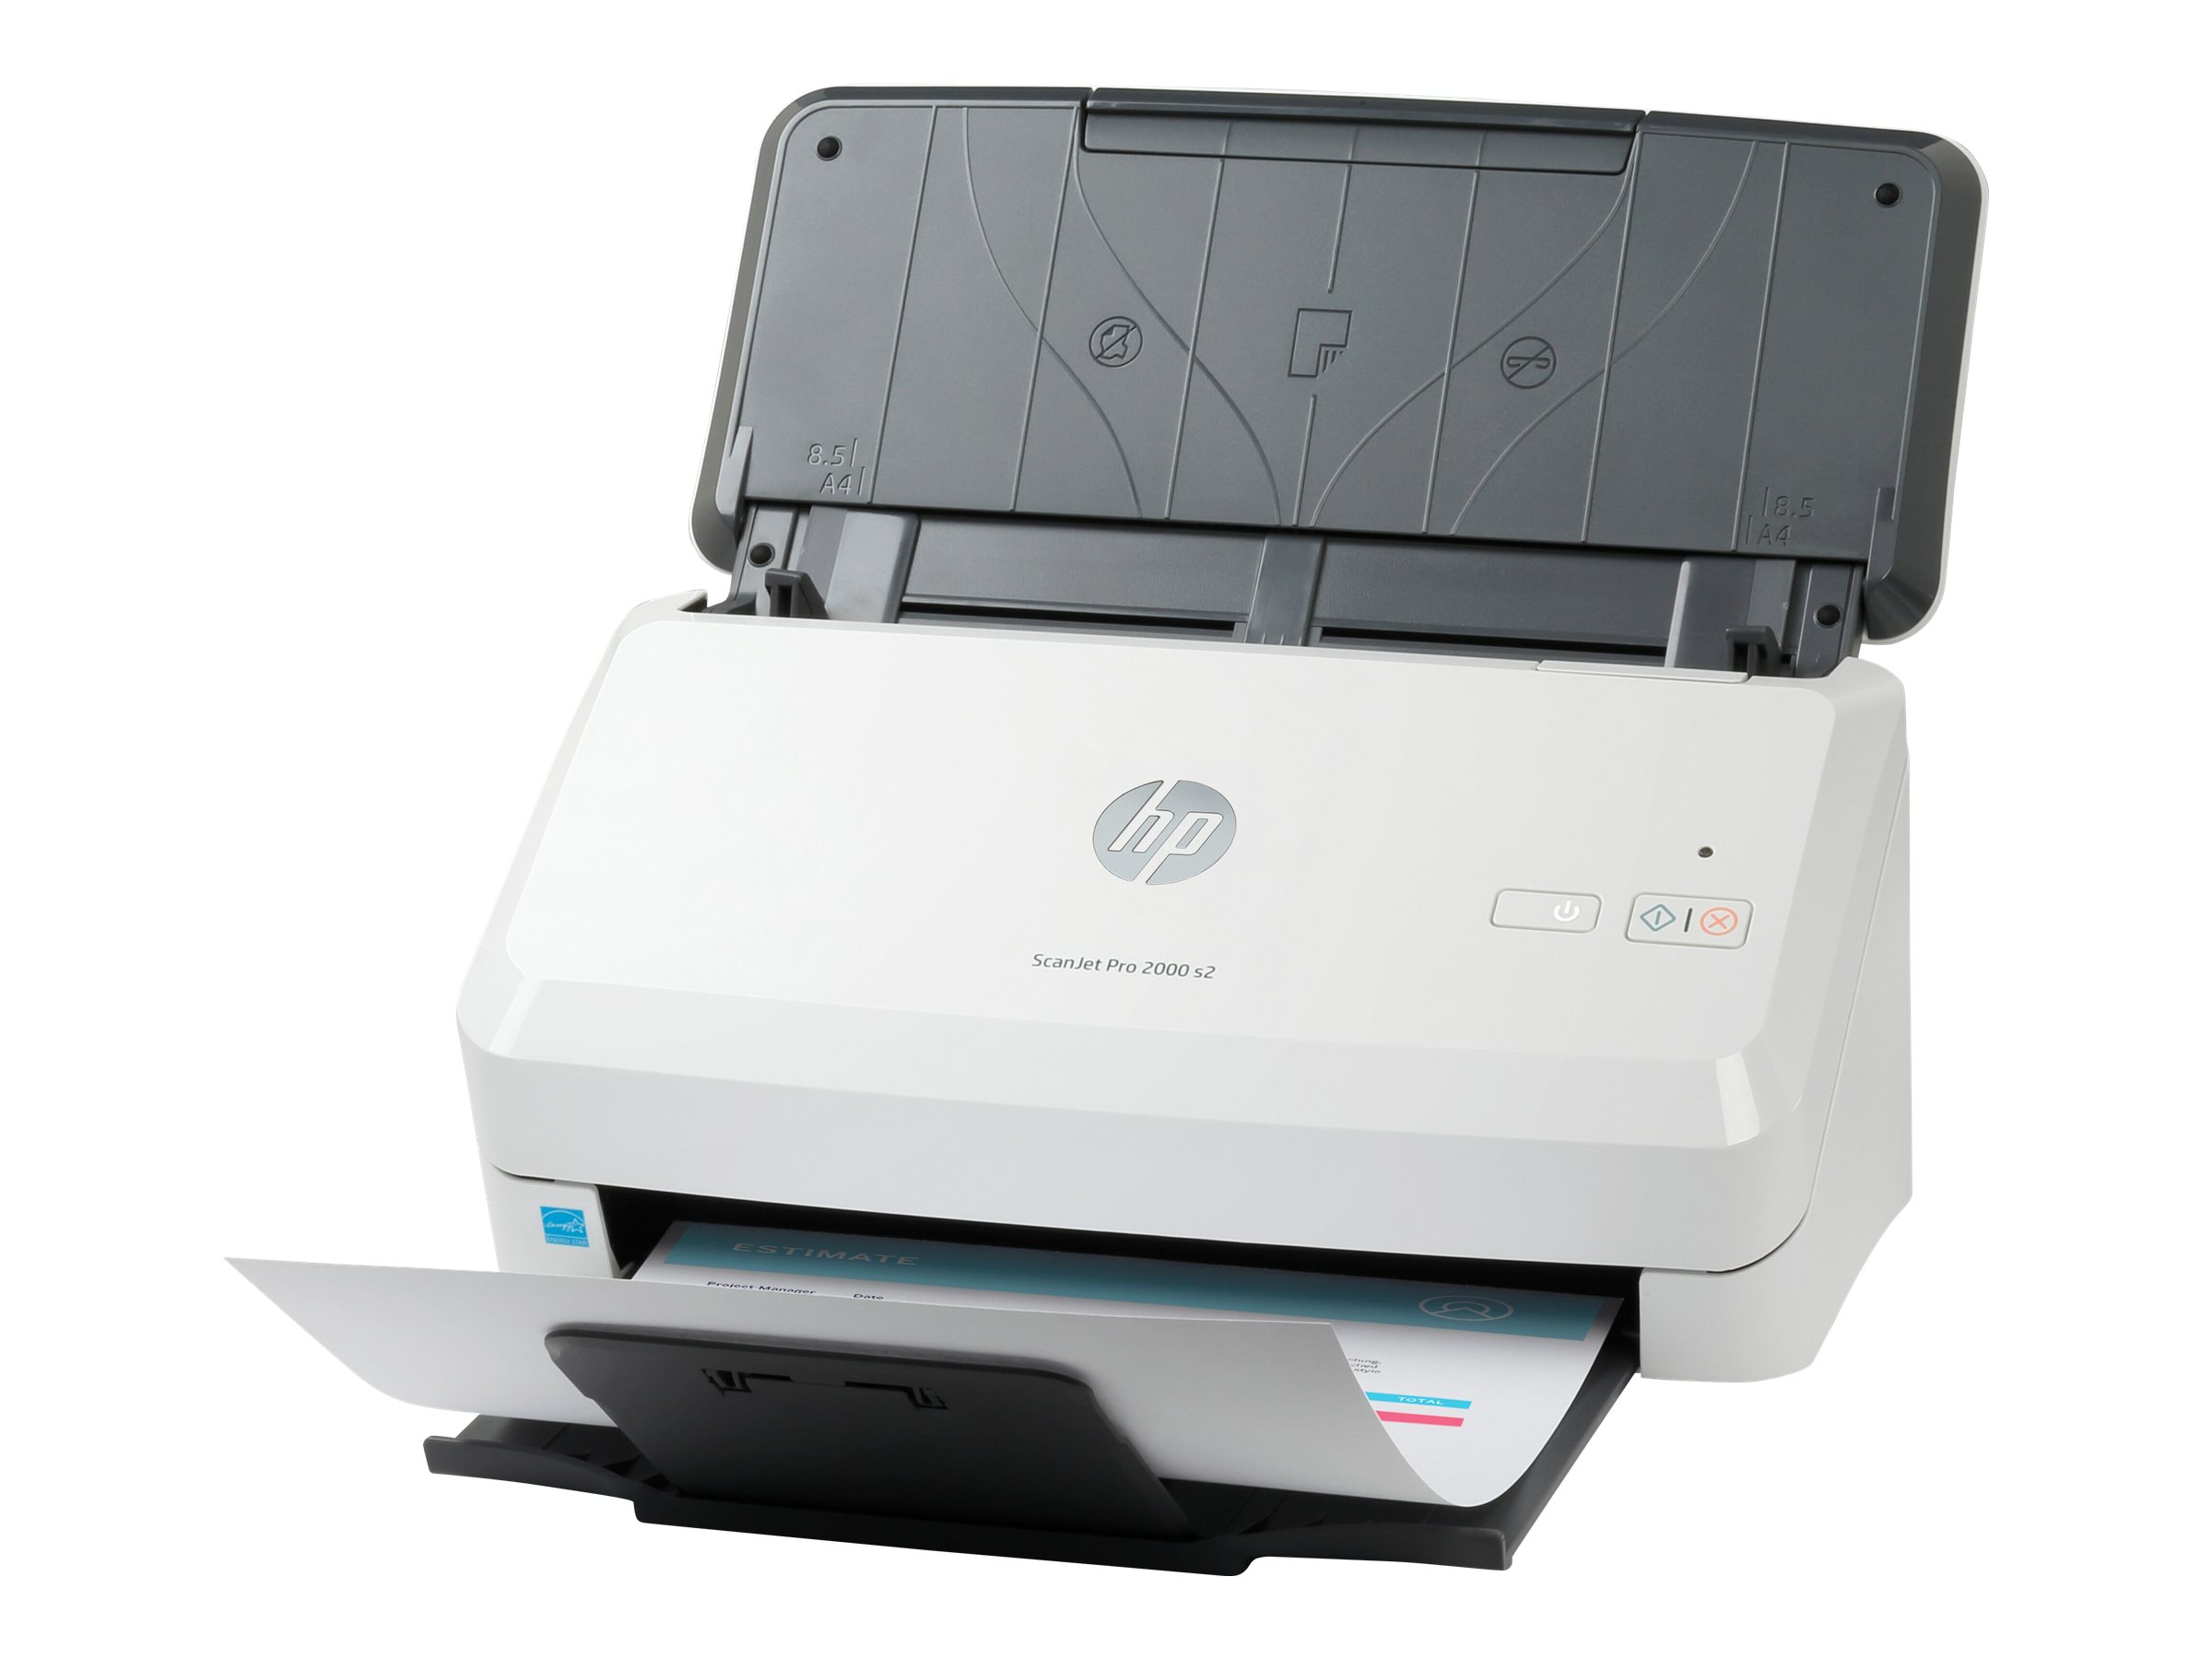 HP Scanjet Pro 2000 s2 Sheet-feed - Dokumentenscanner - Duplex - 216 x 3100 mm - 600 dpi x 600 dpi - bis zu 35 Seiten/Min. (einfarbig) - automatischer Dokumenteneinzug (50 Blätter) - bis zu 3500 Scanvorgänge/Tag - USB 3.0